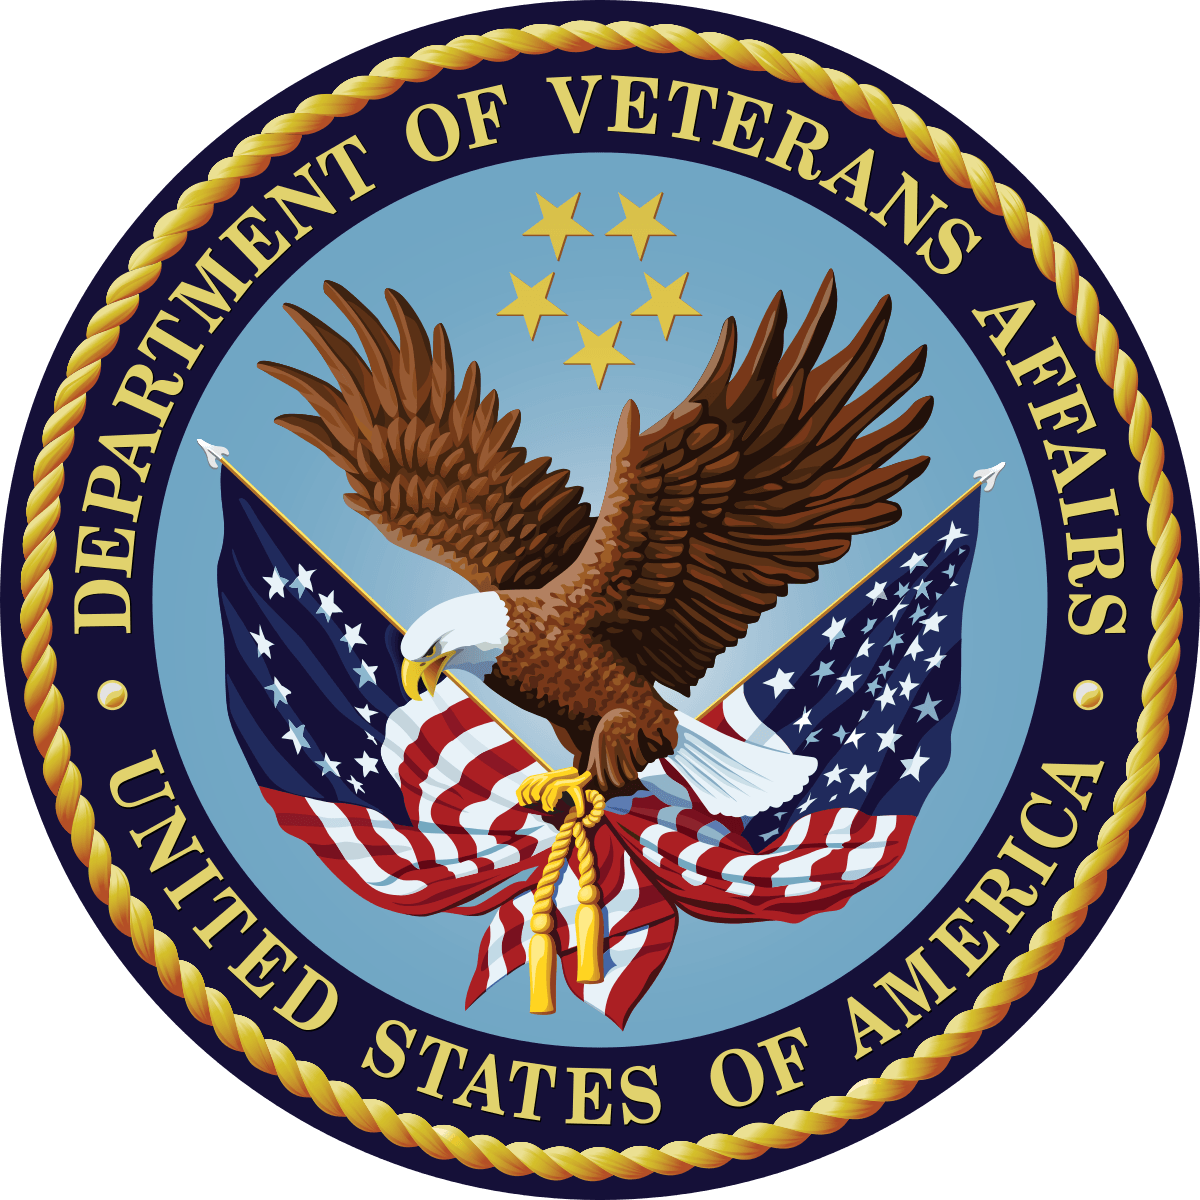 VAMC Logo - United States Department of Veterans Affairs